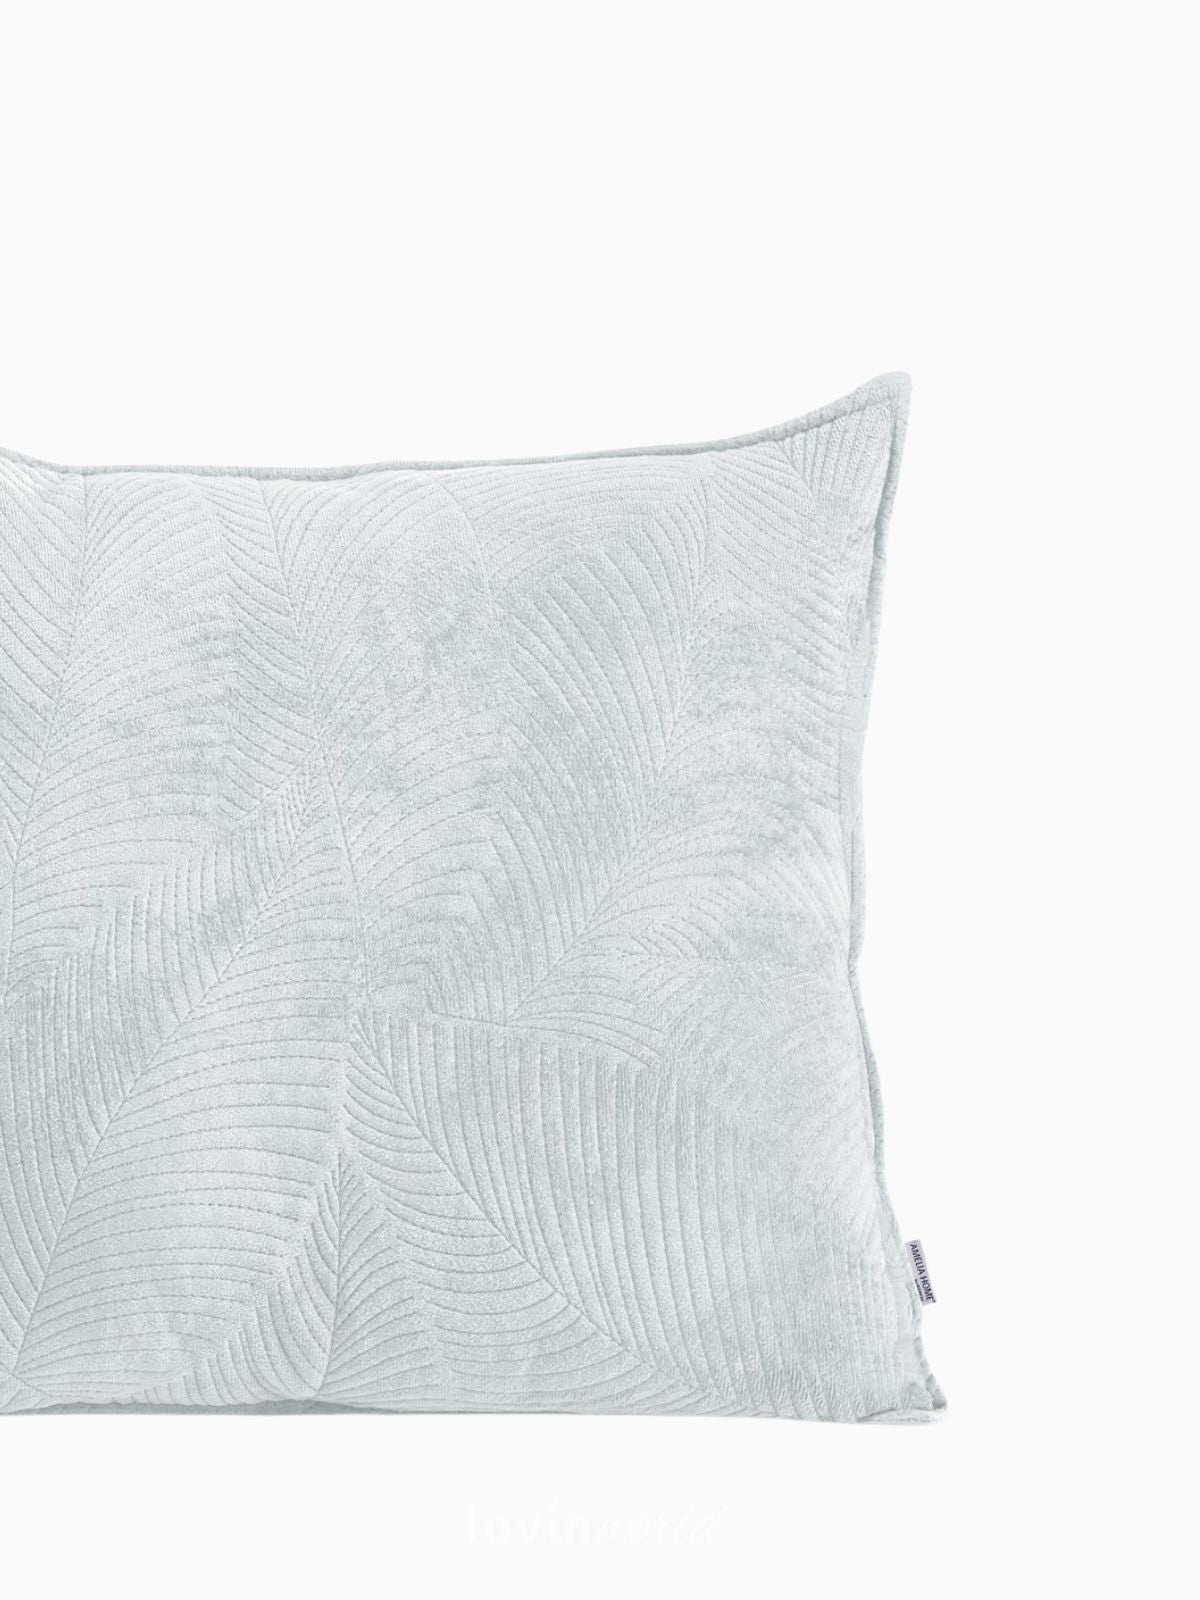 Cuscino decorativo in velluto Palsha, colore grigio 45x45 cm.-3